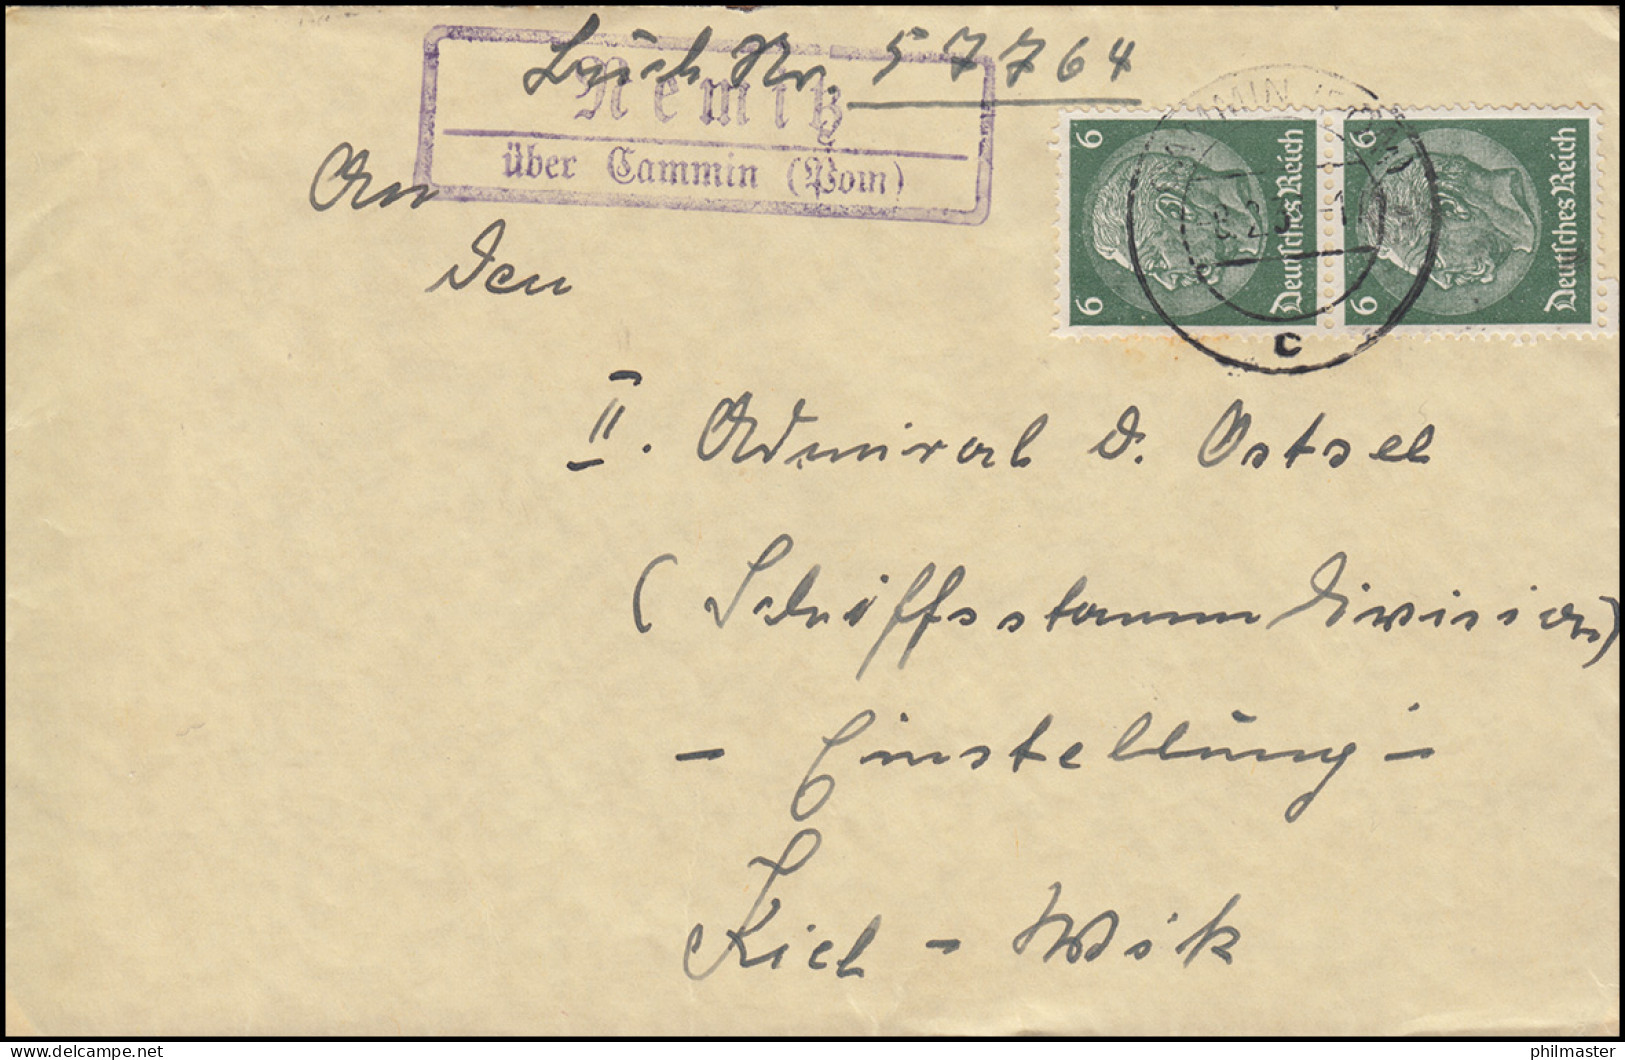 Landpost-Stempel Nemitz über CAMMIN (POMMERN) 8.2.1937 Auf Brief - Covers & Documents